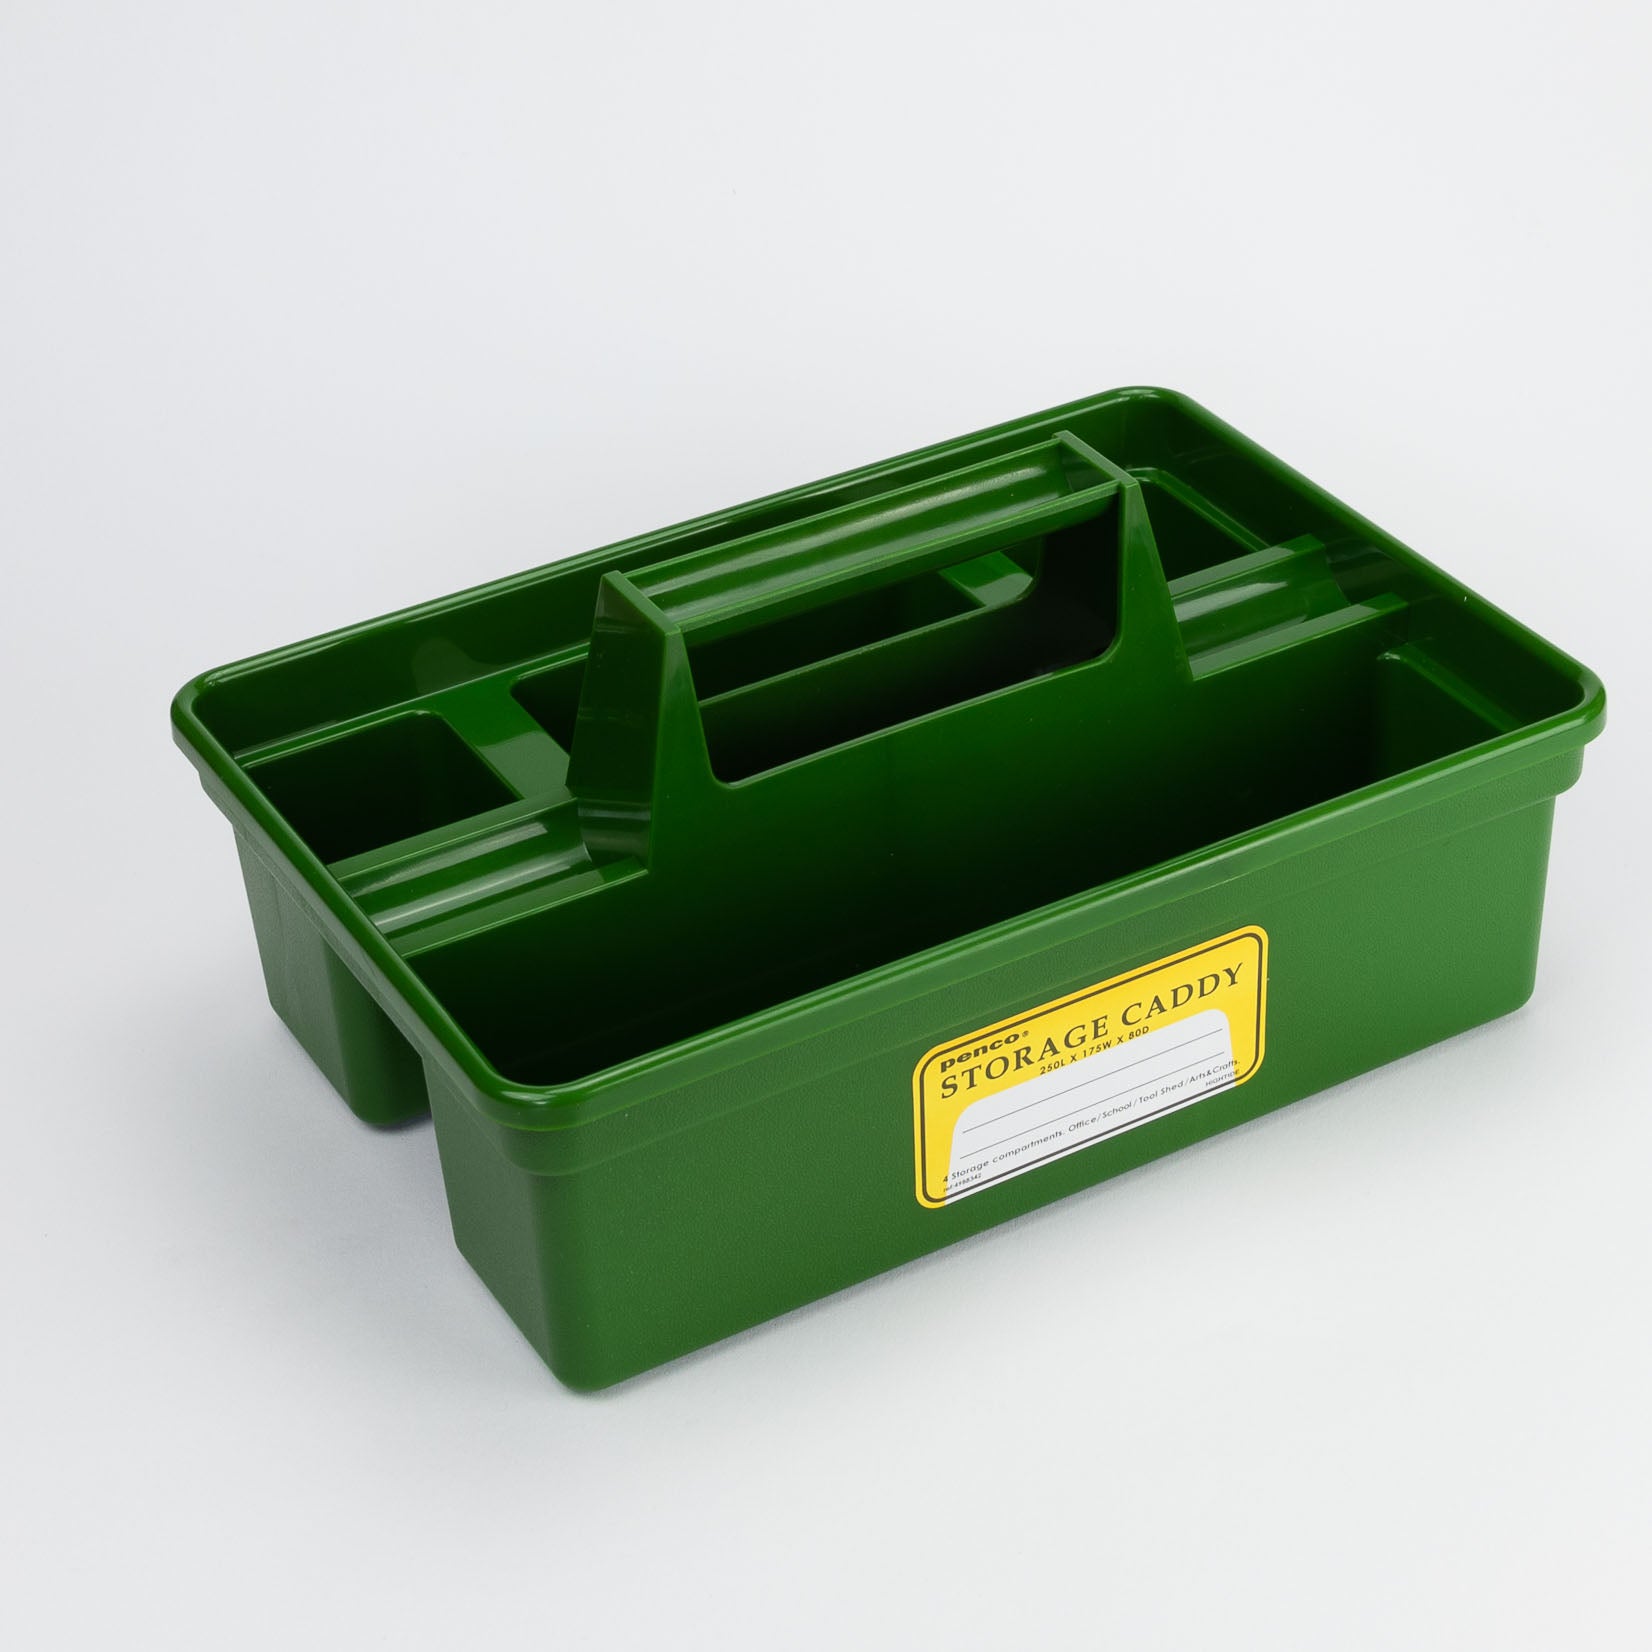 Penco Storage Caddy Organizer Utensilo Aufbewahrung Ordnung Ordner green grün